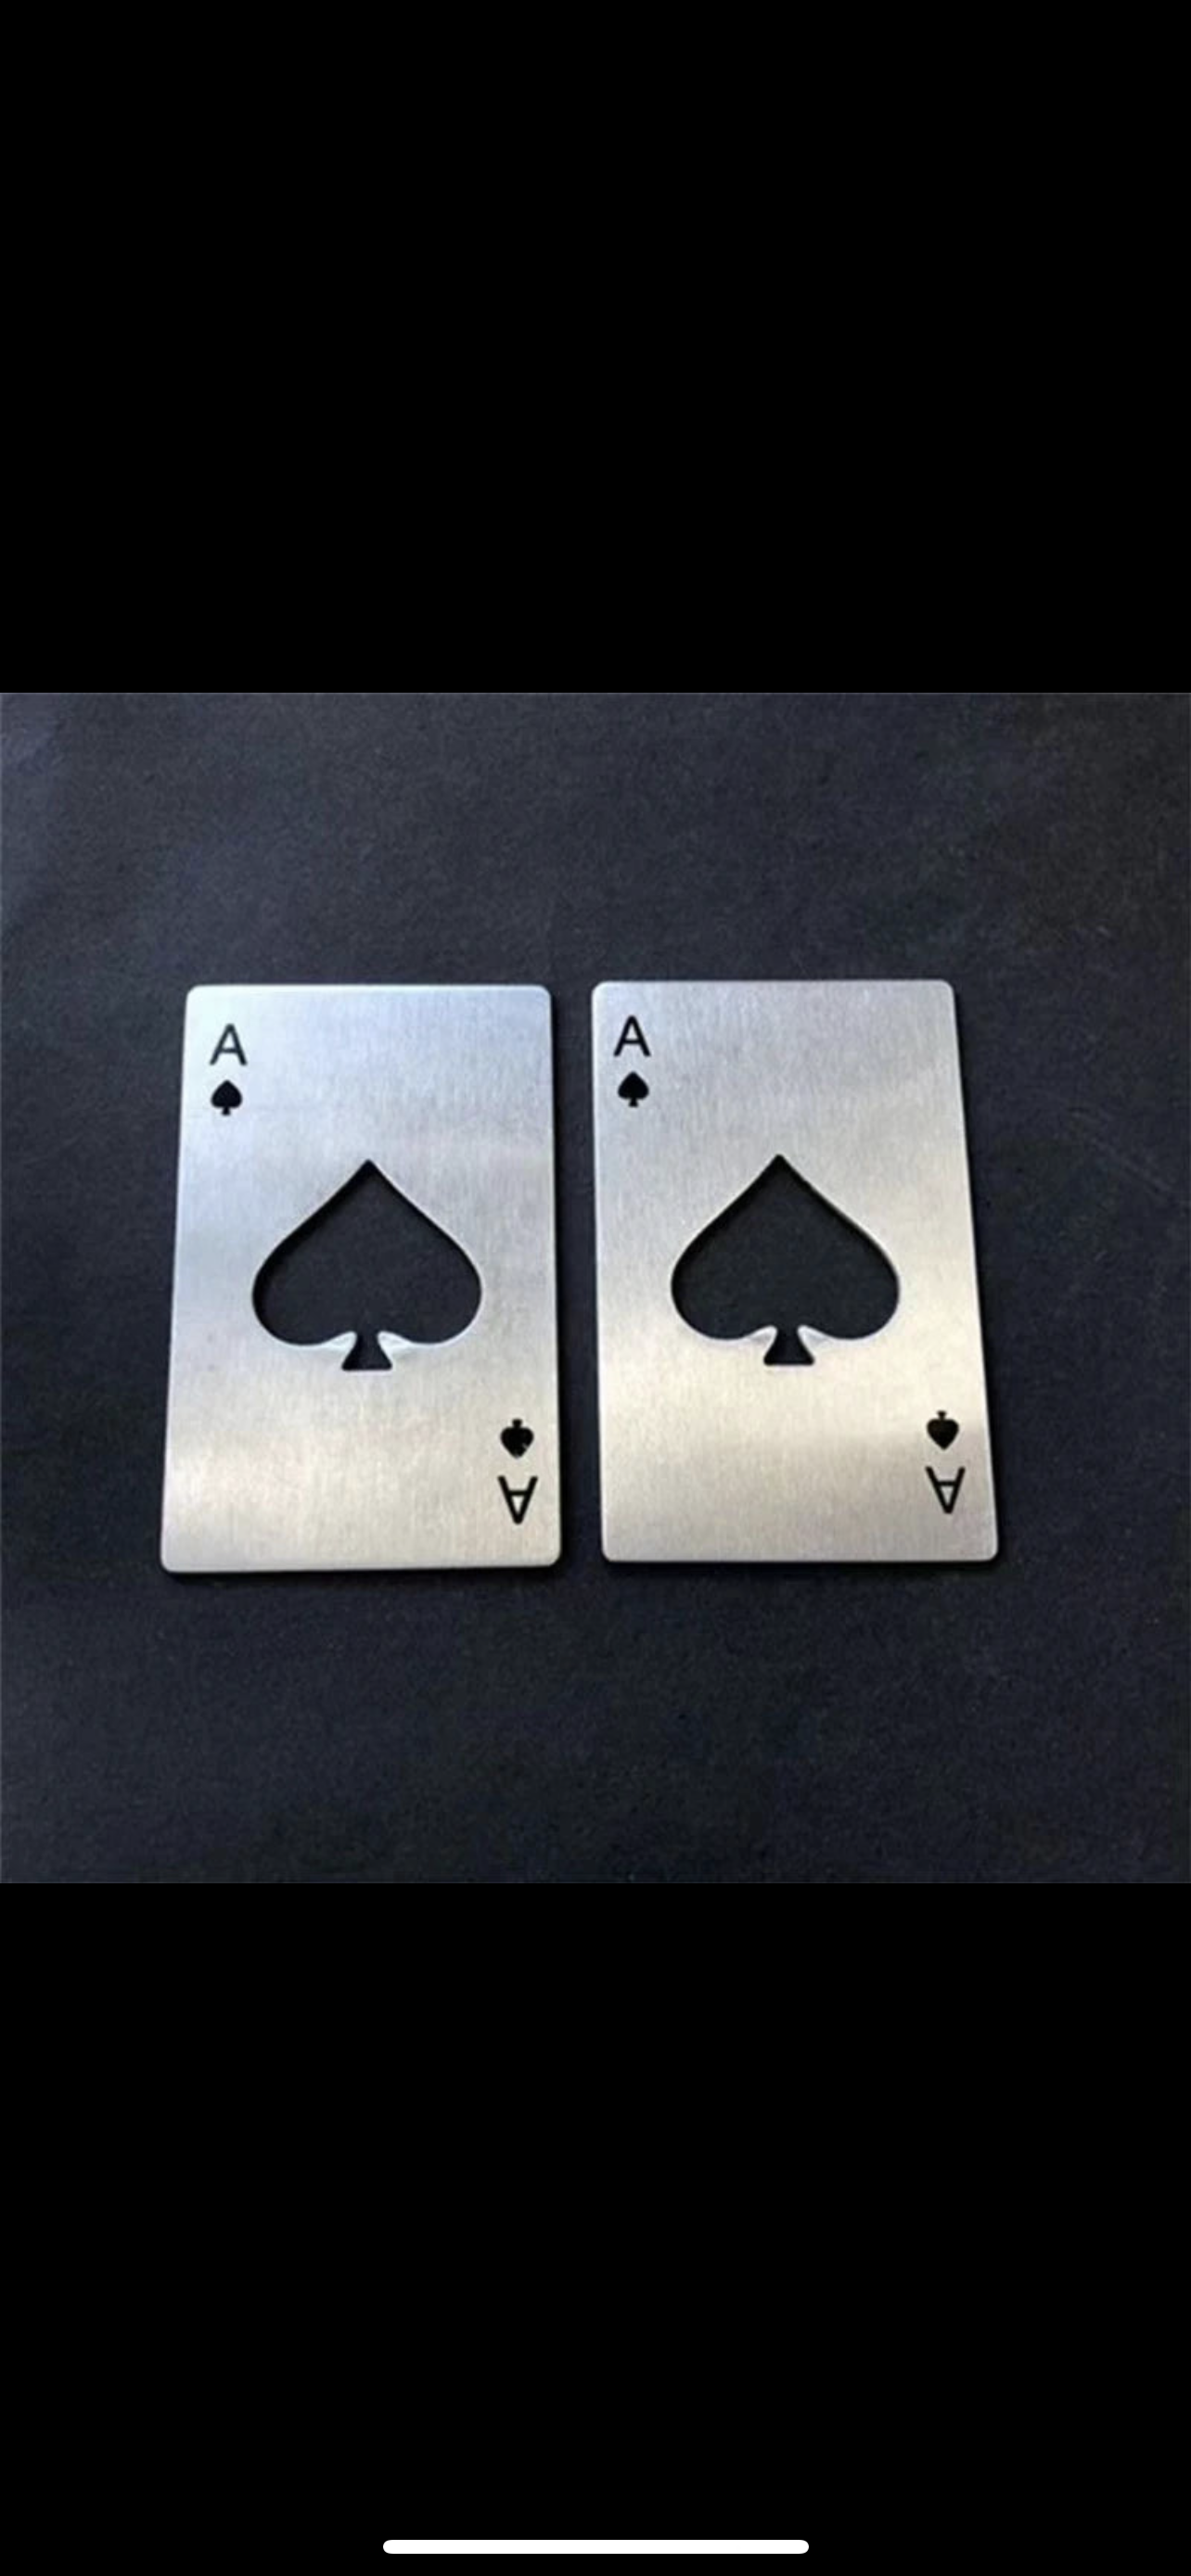 New Stainless Steel Metal Poker Game Waterproof Blackjack Game Toss Durable Silver Card Poker Opener